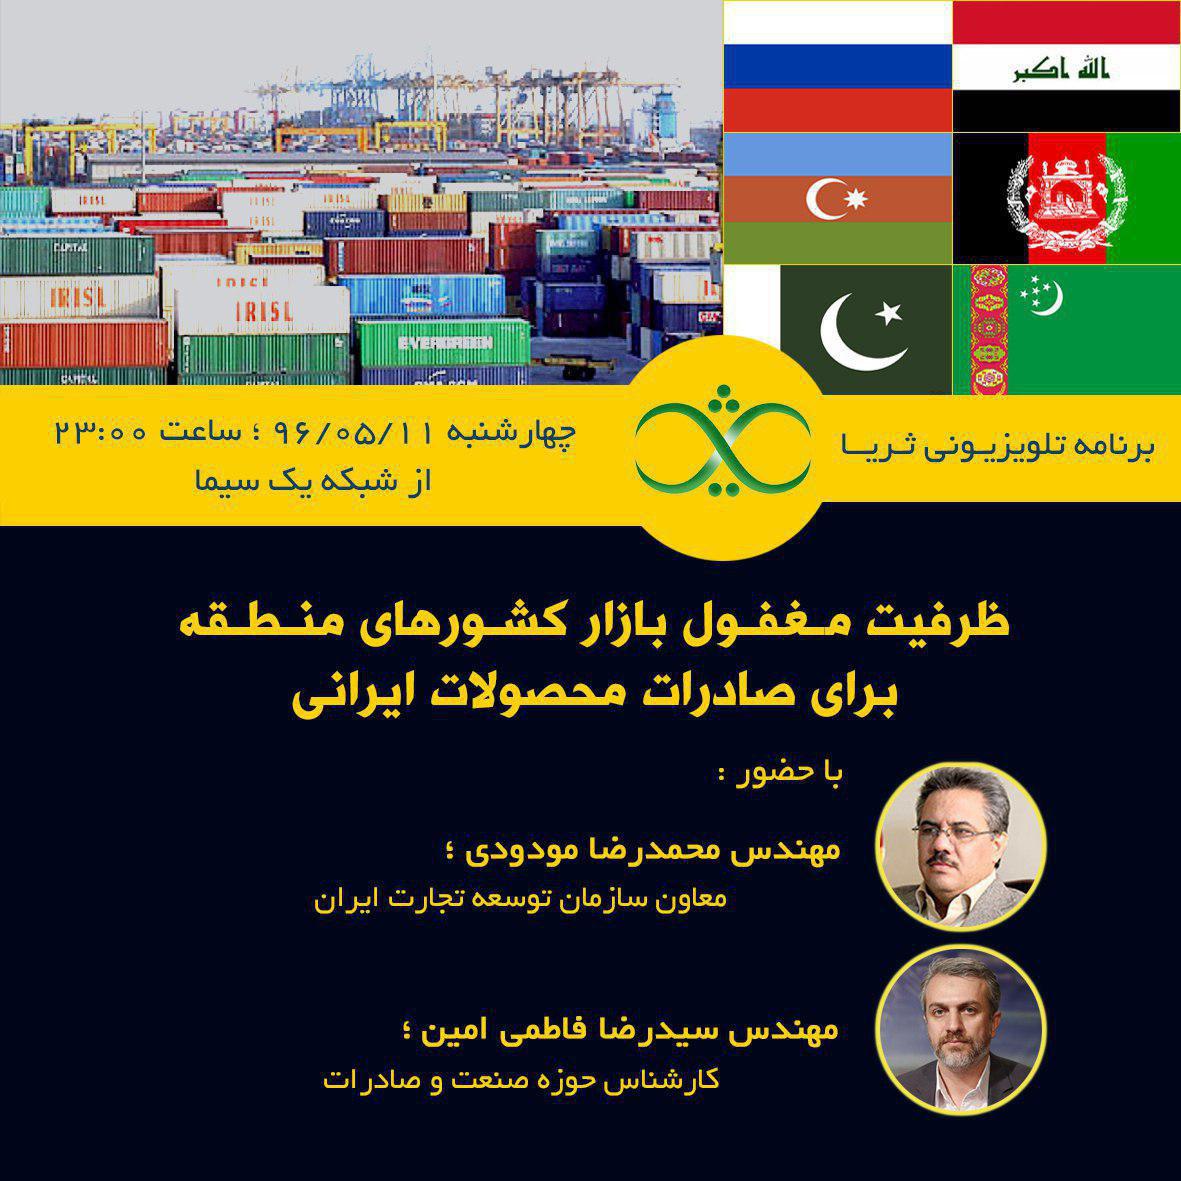 بررسی ظرفیت مغفول بازارهای منطقه برای محصولات ایران در برنامه امشب ثریا